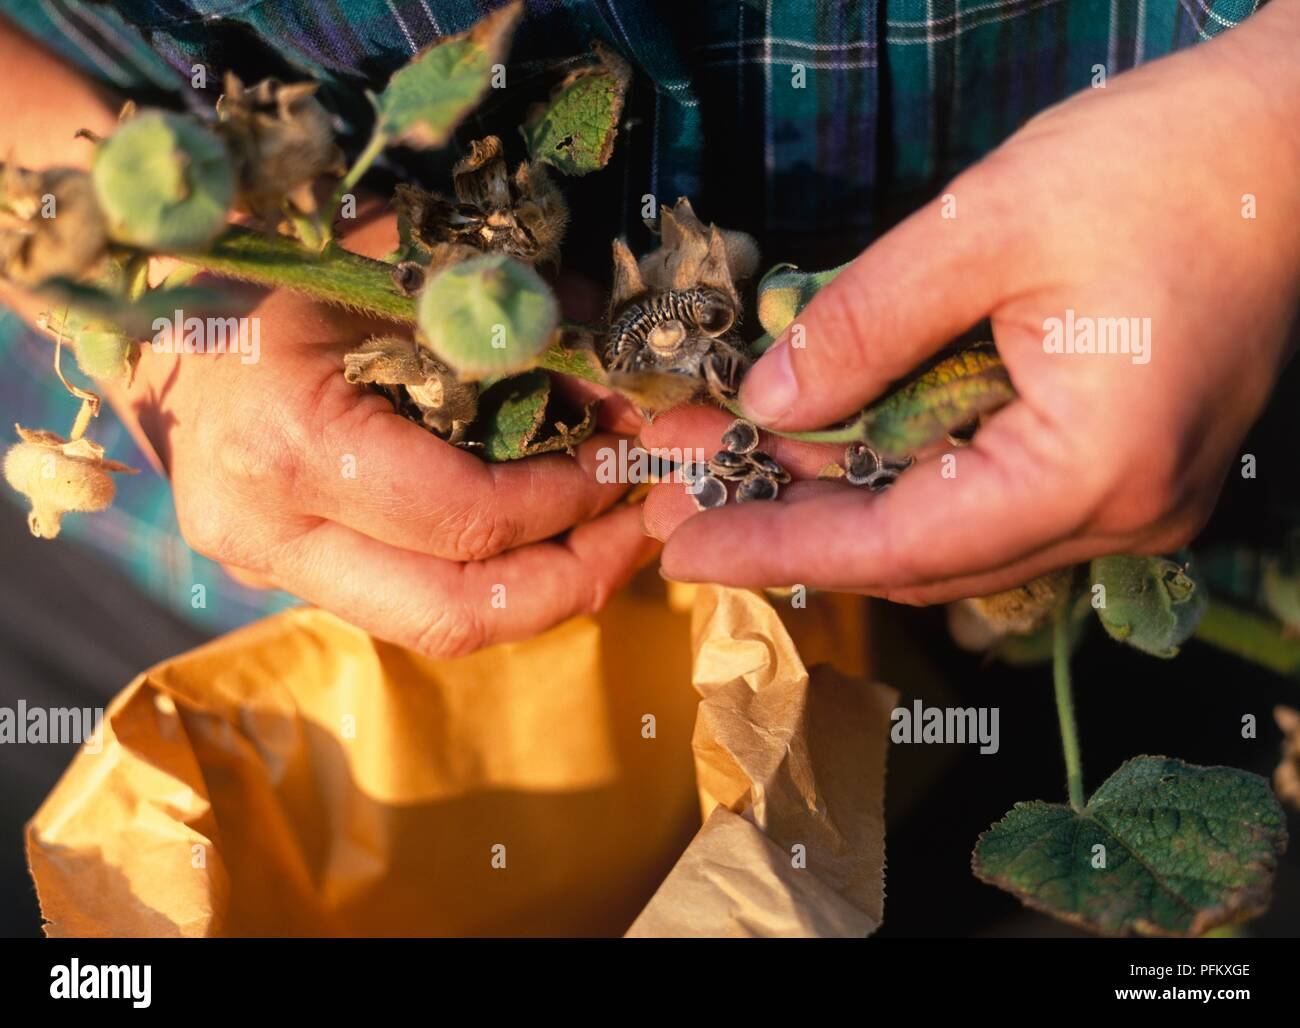 Hände entfernen der reifen Samen von Alcea rosea (Malve) über Papiertüte, close-up Stockfoto